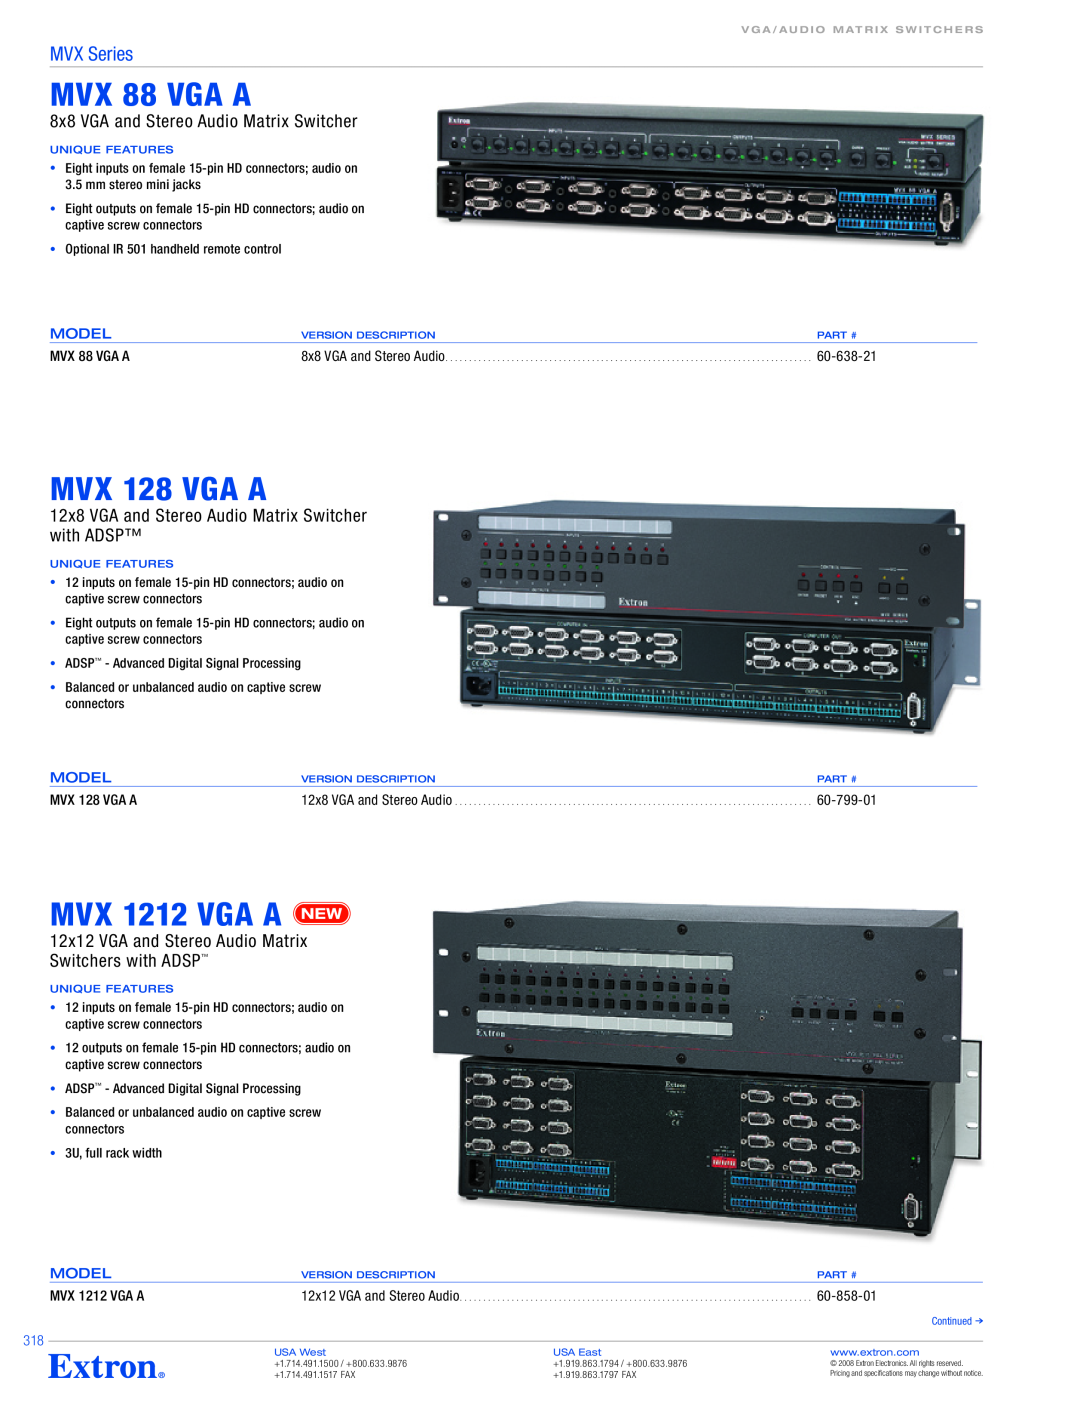 Extron electronic MVX 88 VGA A, MVX 128 VGA A, MVX 1212 VGA A, 8x8 VGA and Stereo Audio Matrix Switcher, 60-638-21 